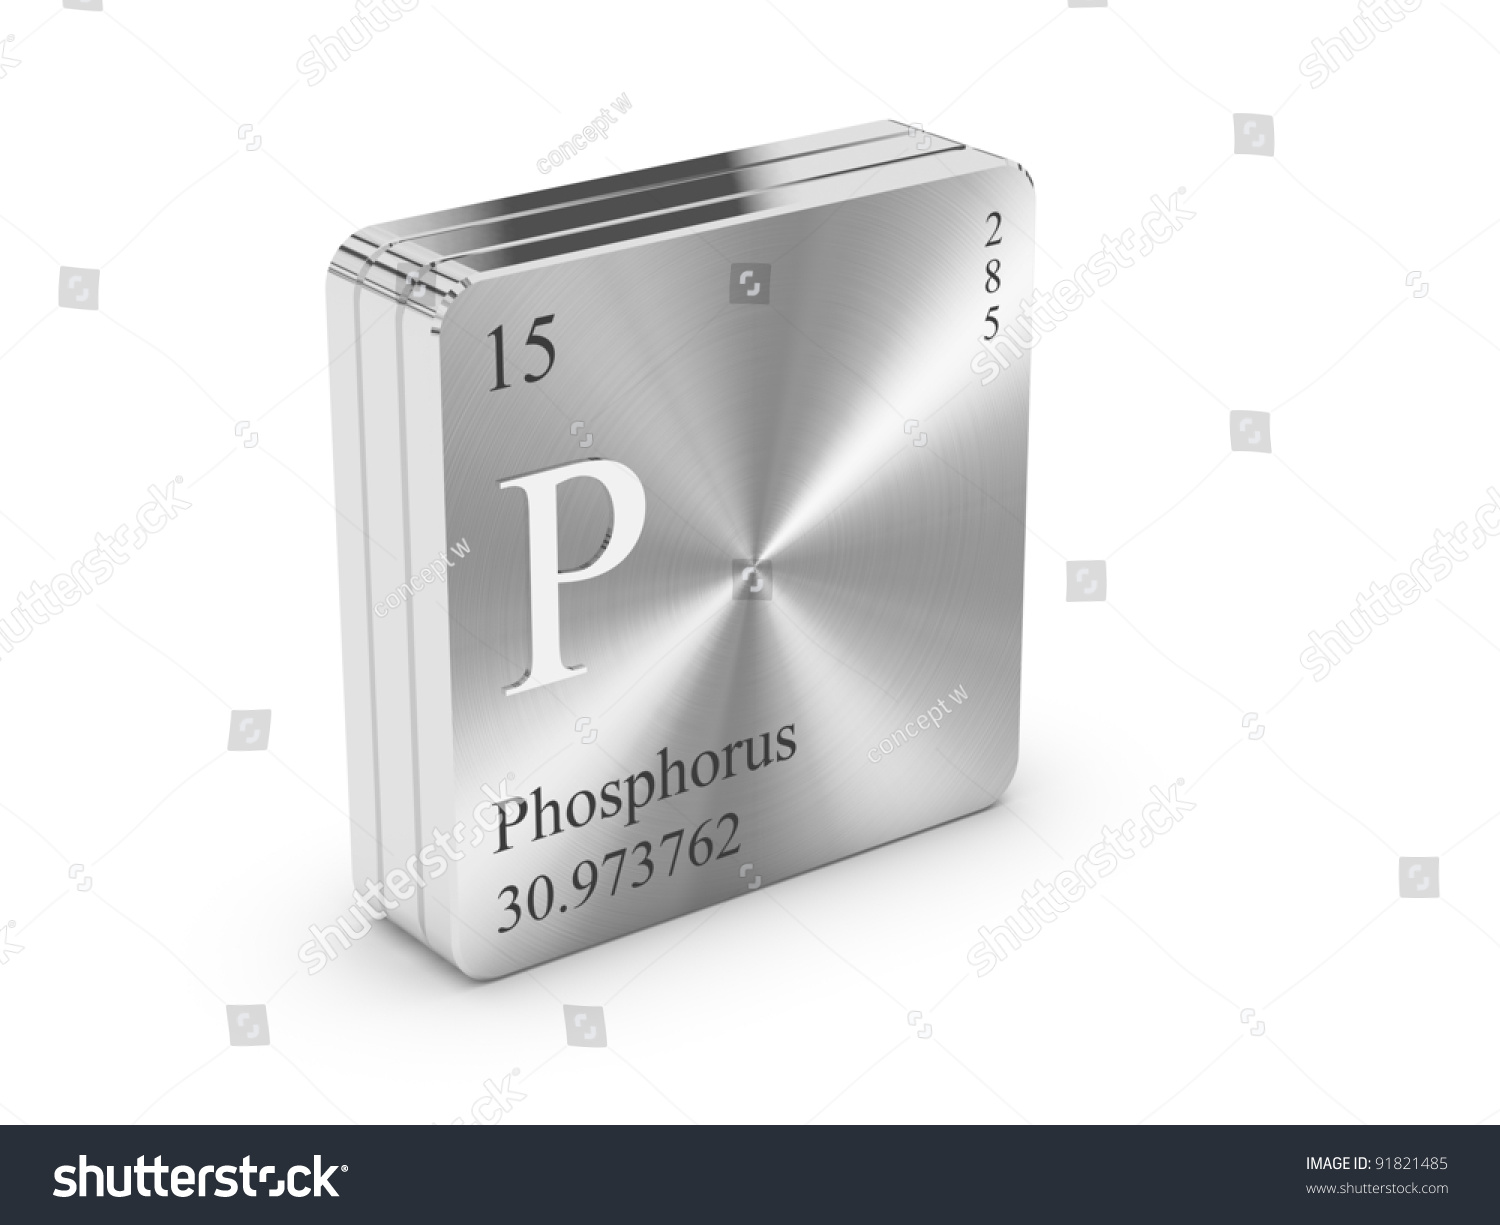 Is phosphorus a metal?